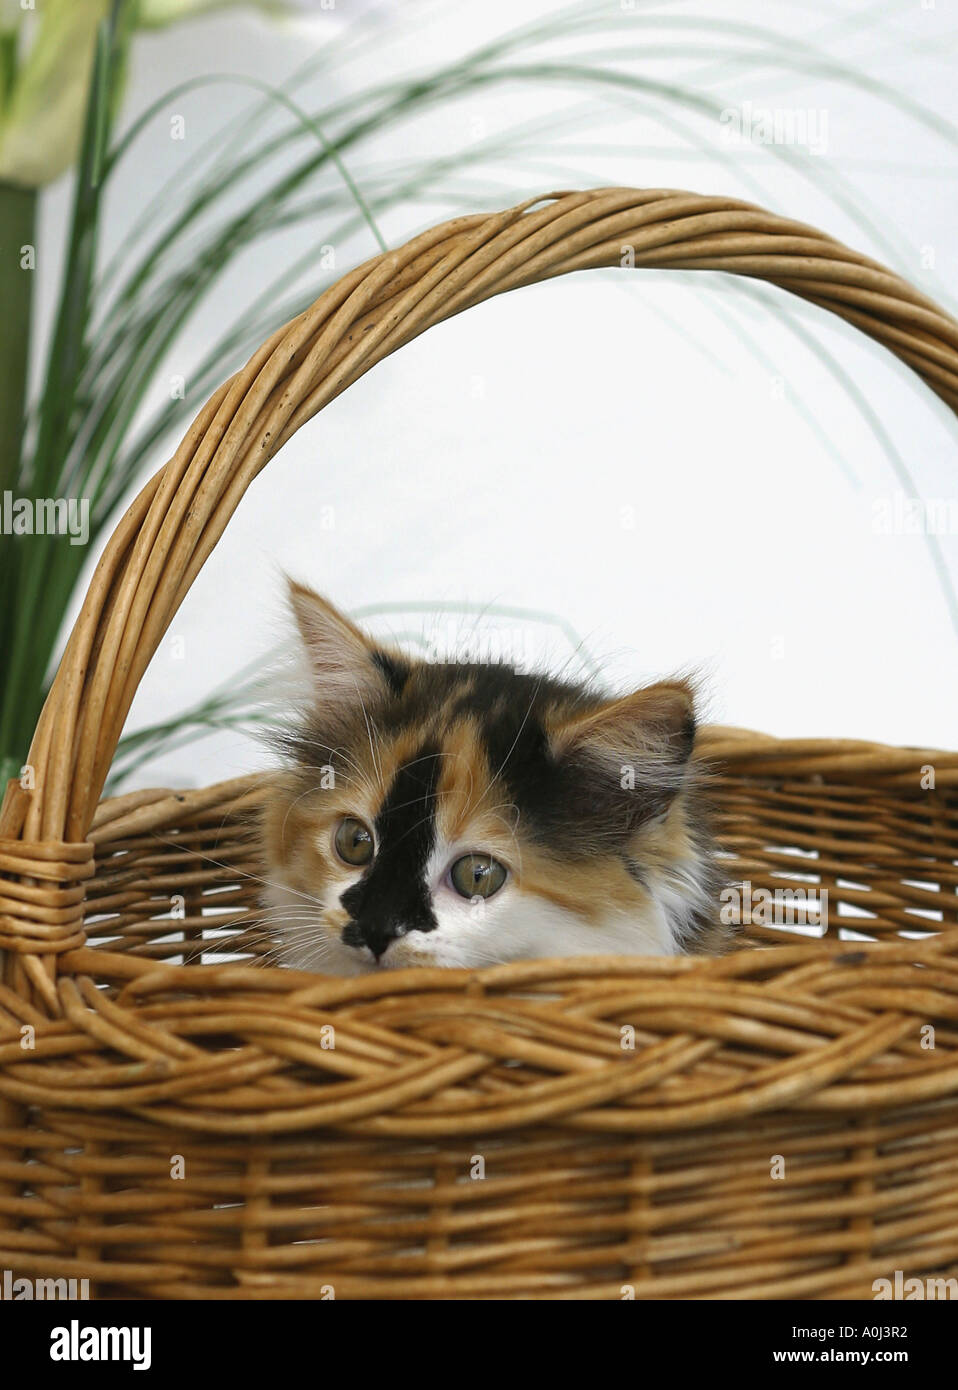 Kitten peeping out of a wicker basket Stock Photo